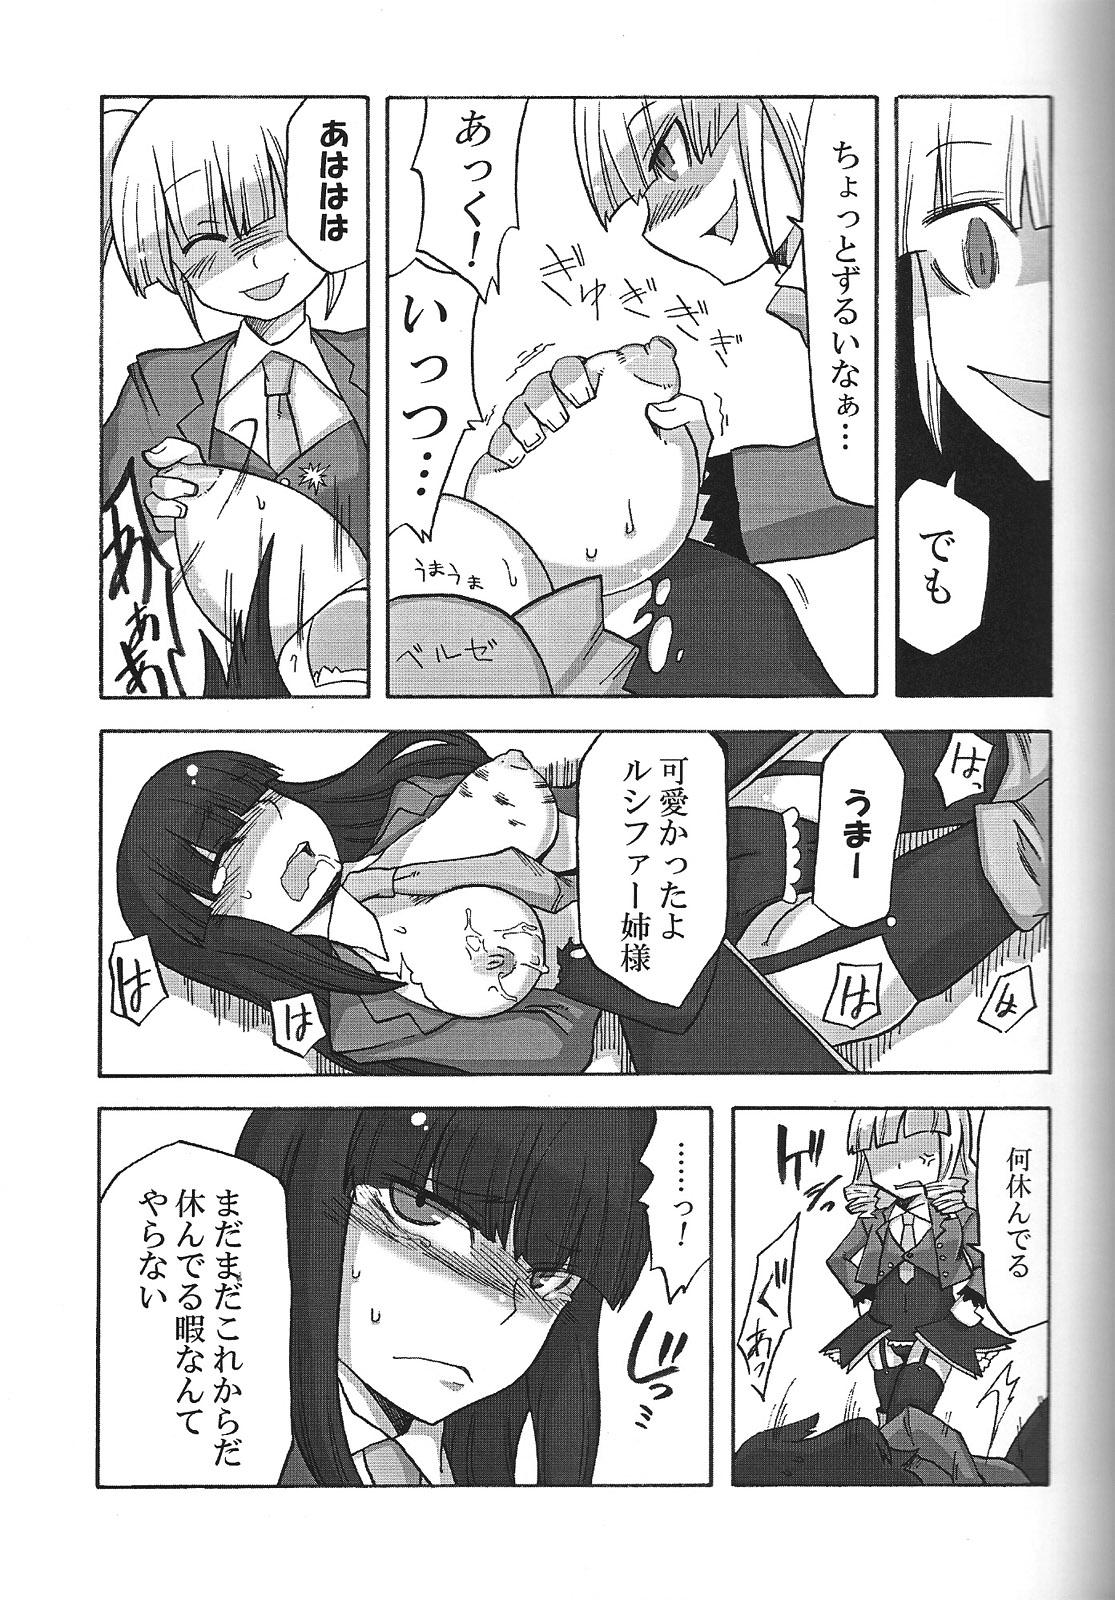 Red Head Nakayoshi 7 Shimai - Umineko no naku koro ni Pale - Page 10